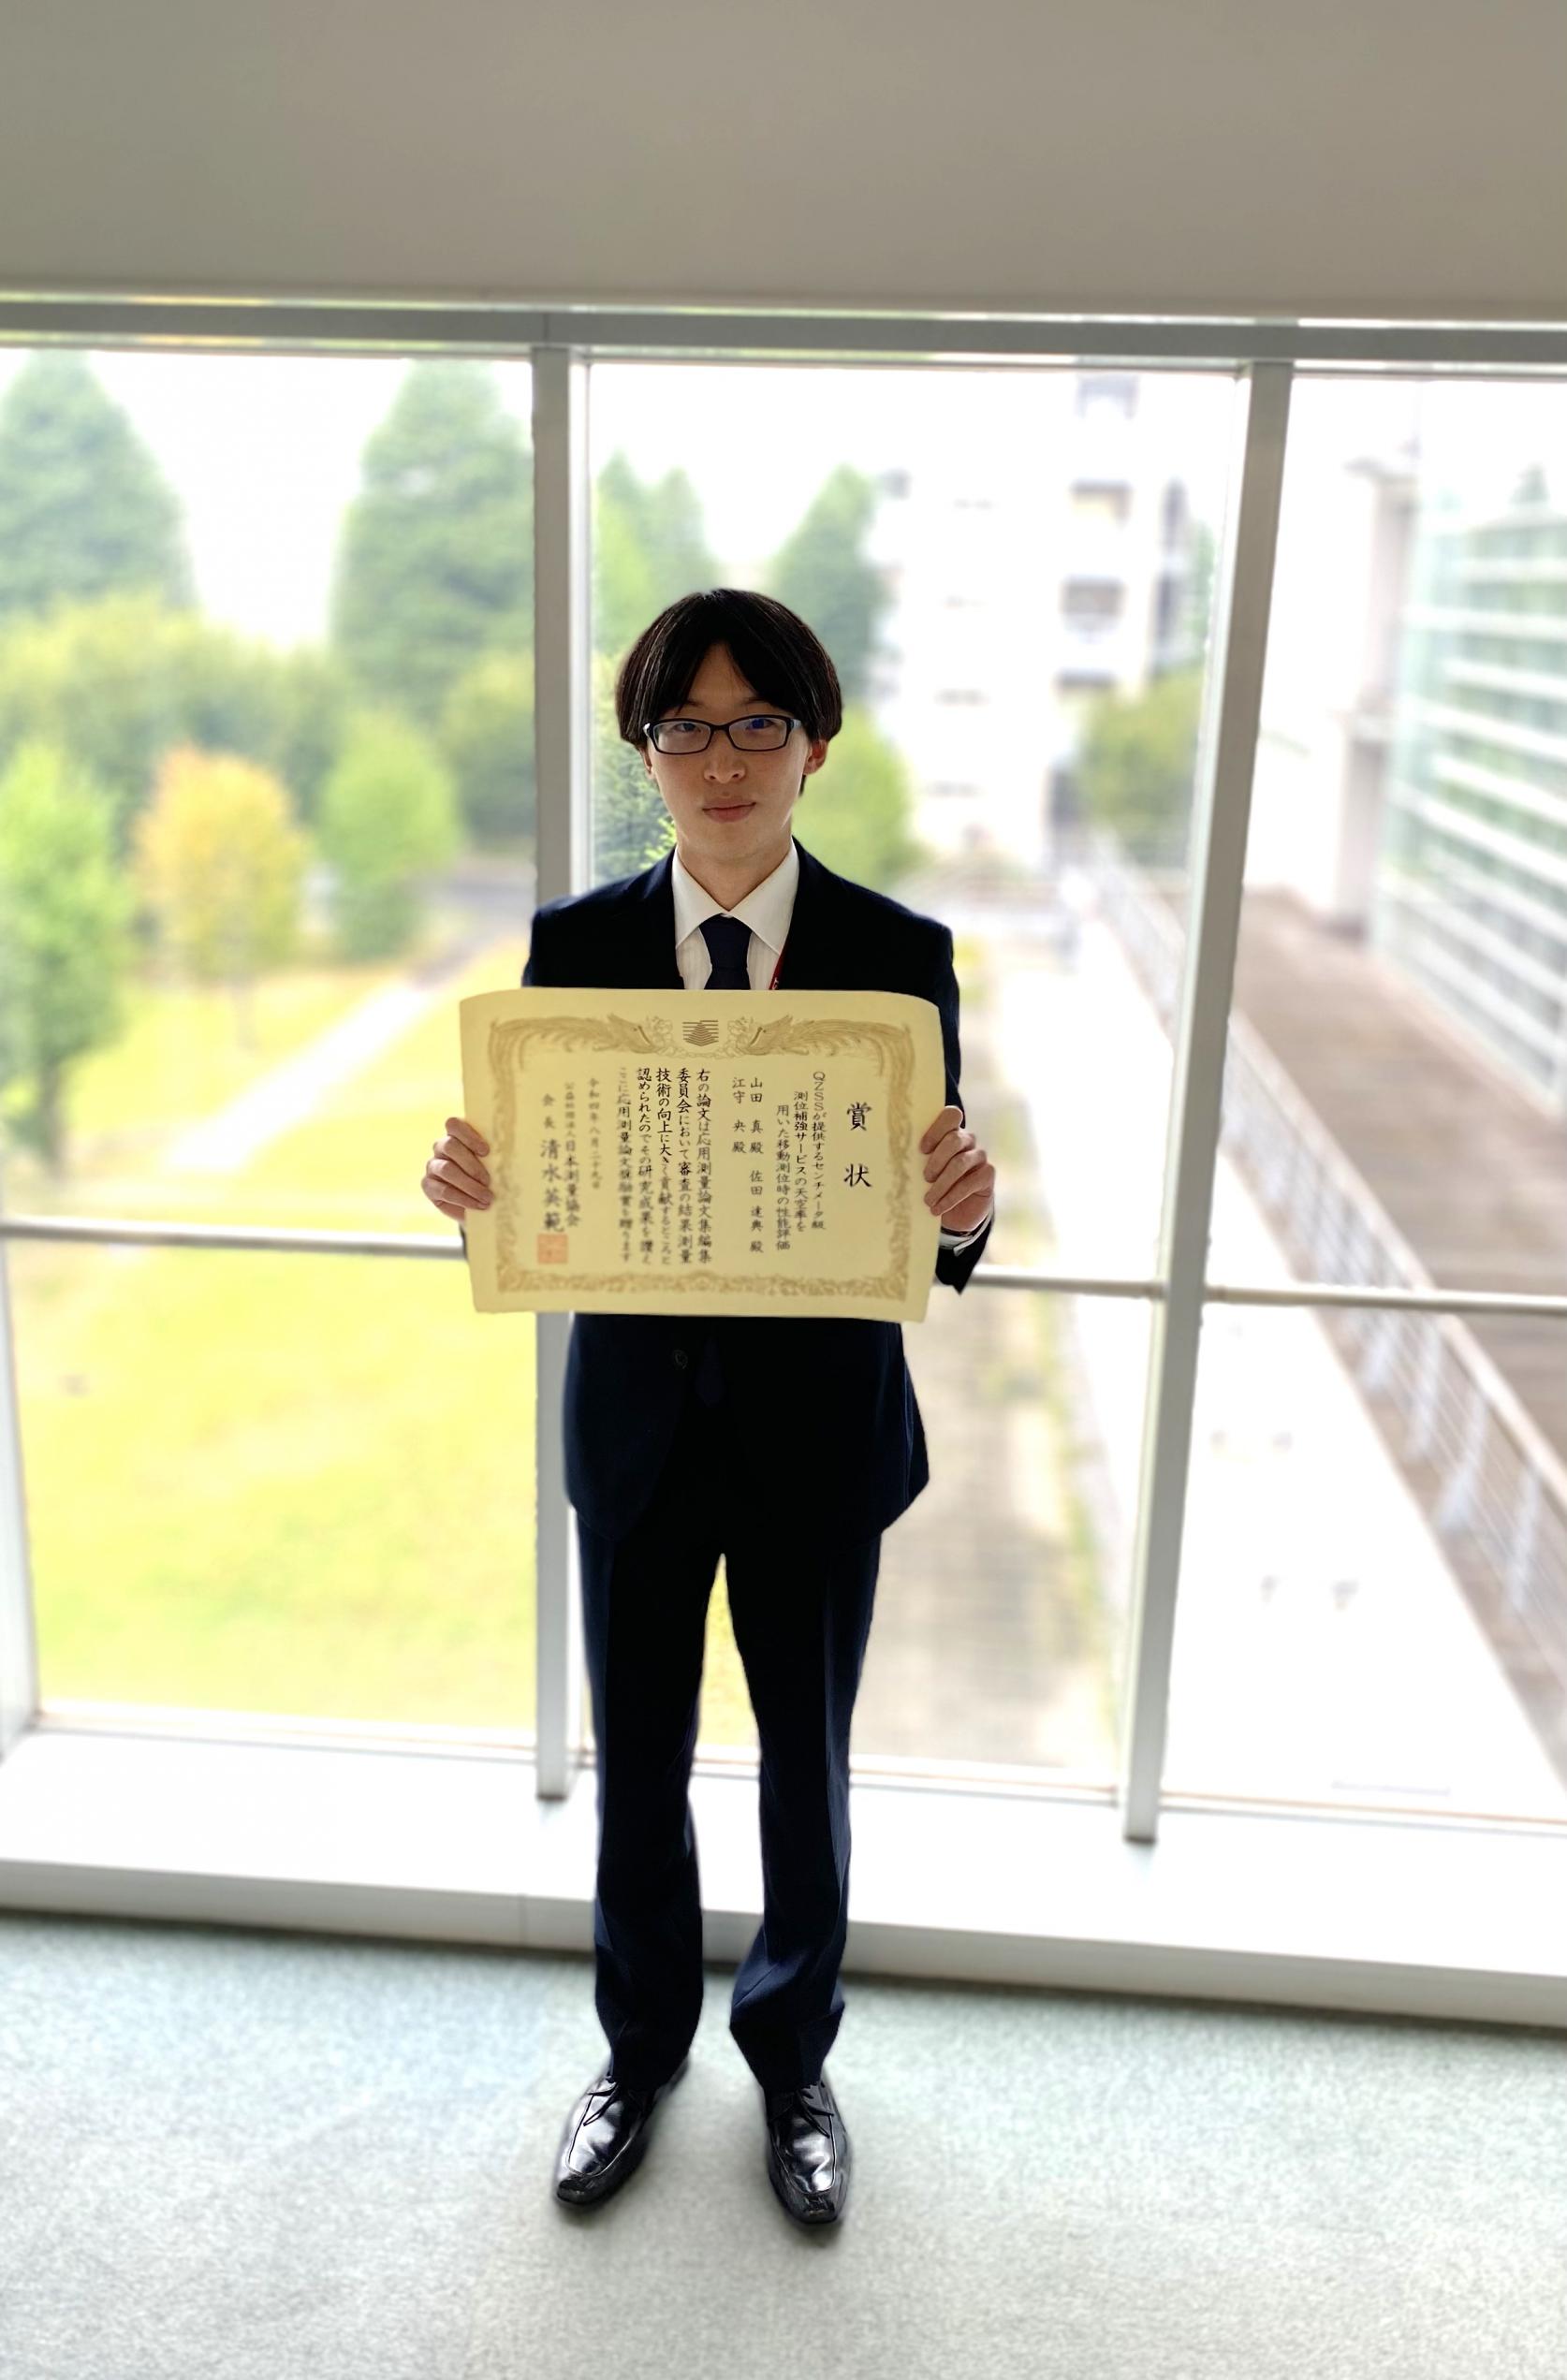 交通システム工学専攻2年の山田真さんが、第33回応用測量技術研究発表会にて「応用測量論文奨励賞」を受賞しました。